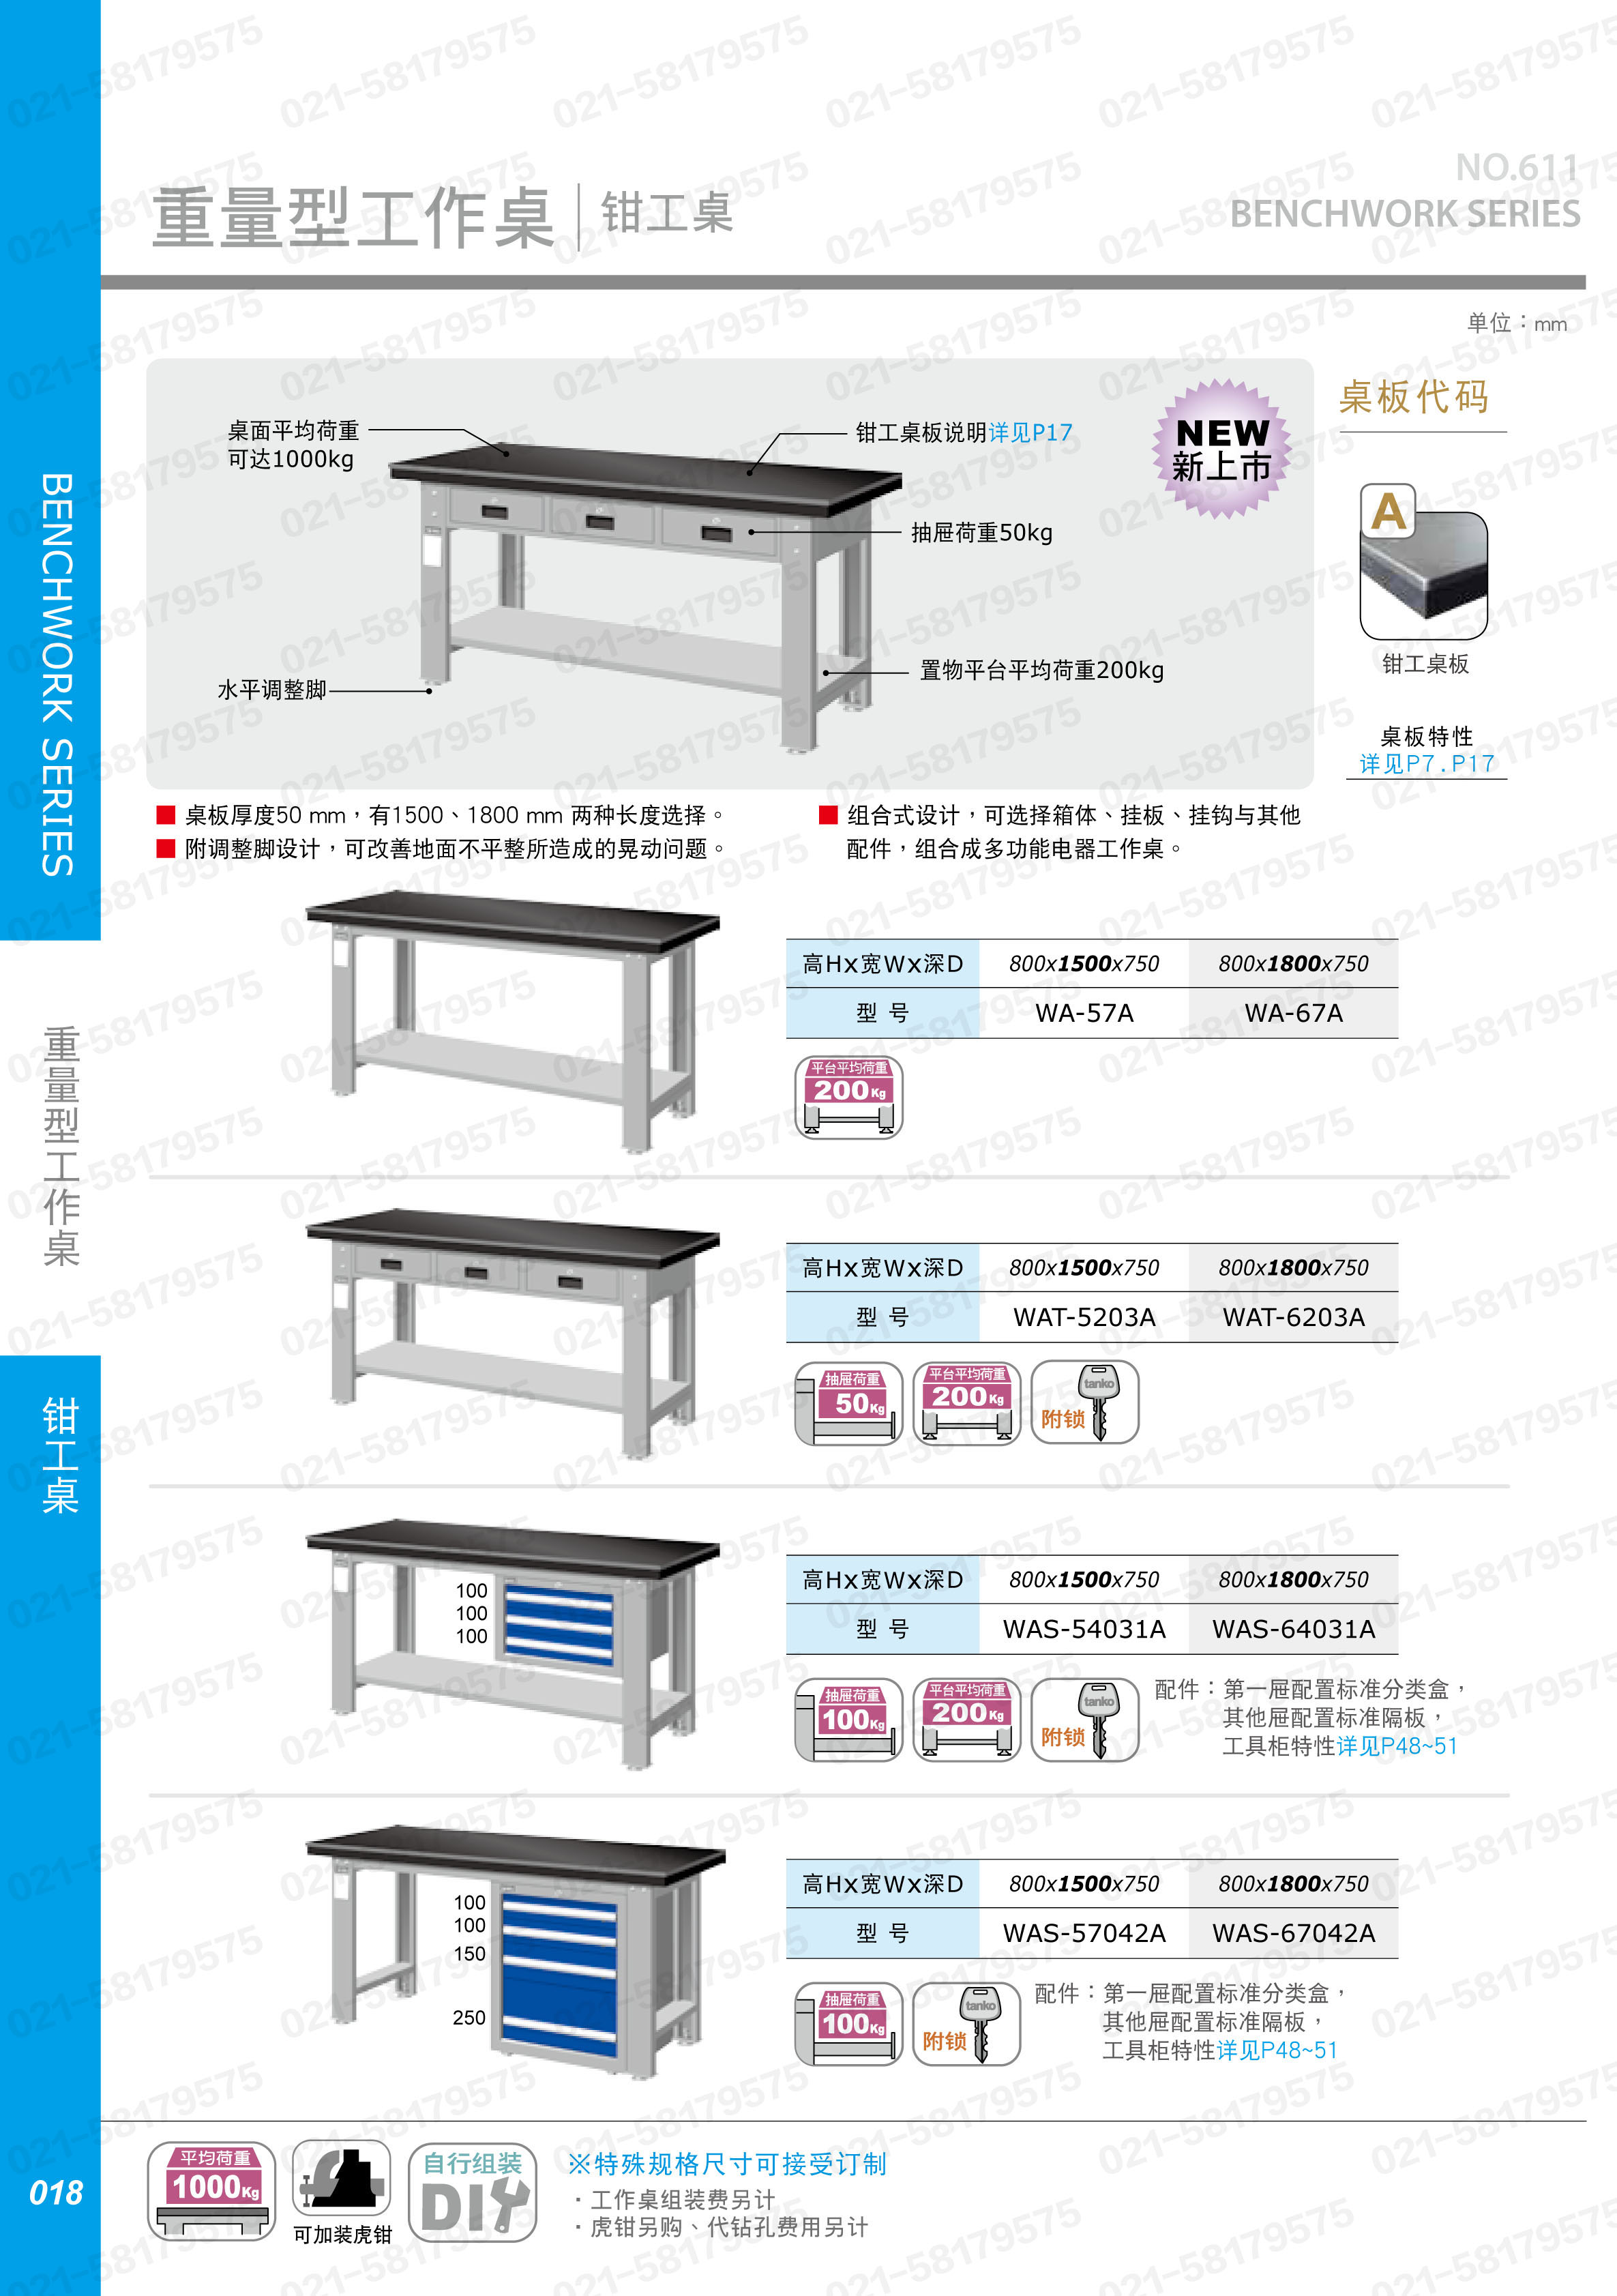 重型工作桌1500×750×800mm平均承重1吨不锈钢桌板,WA-57S